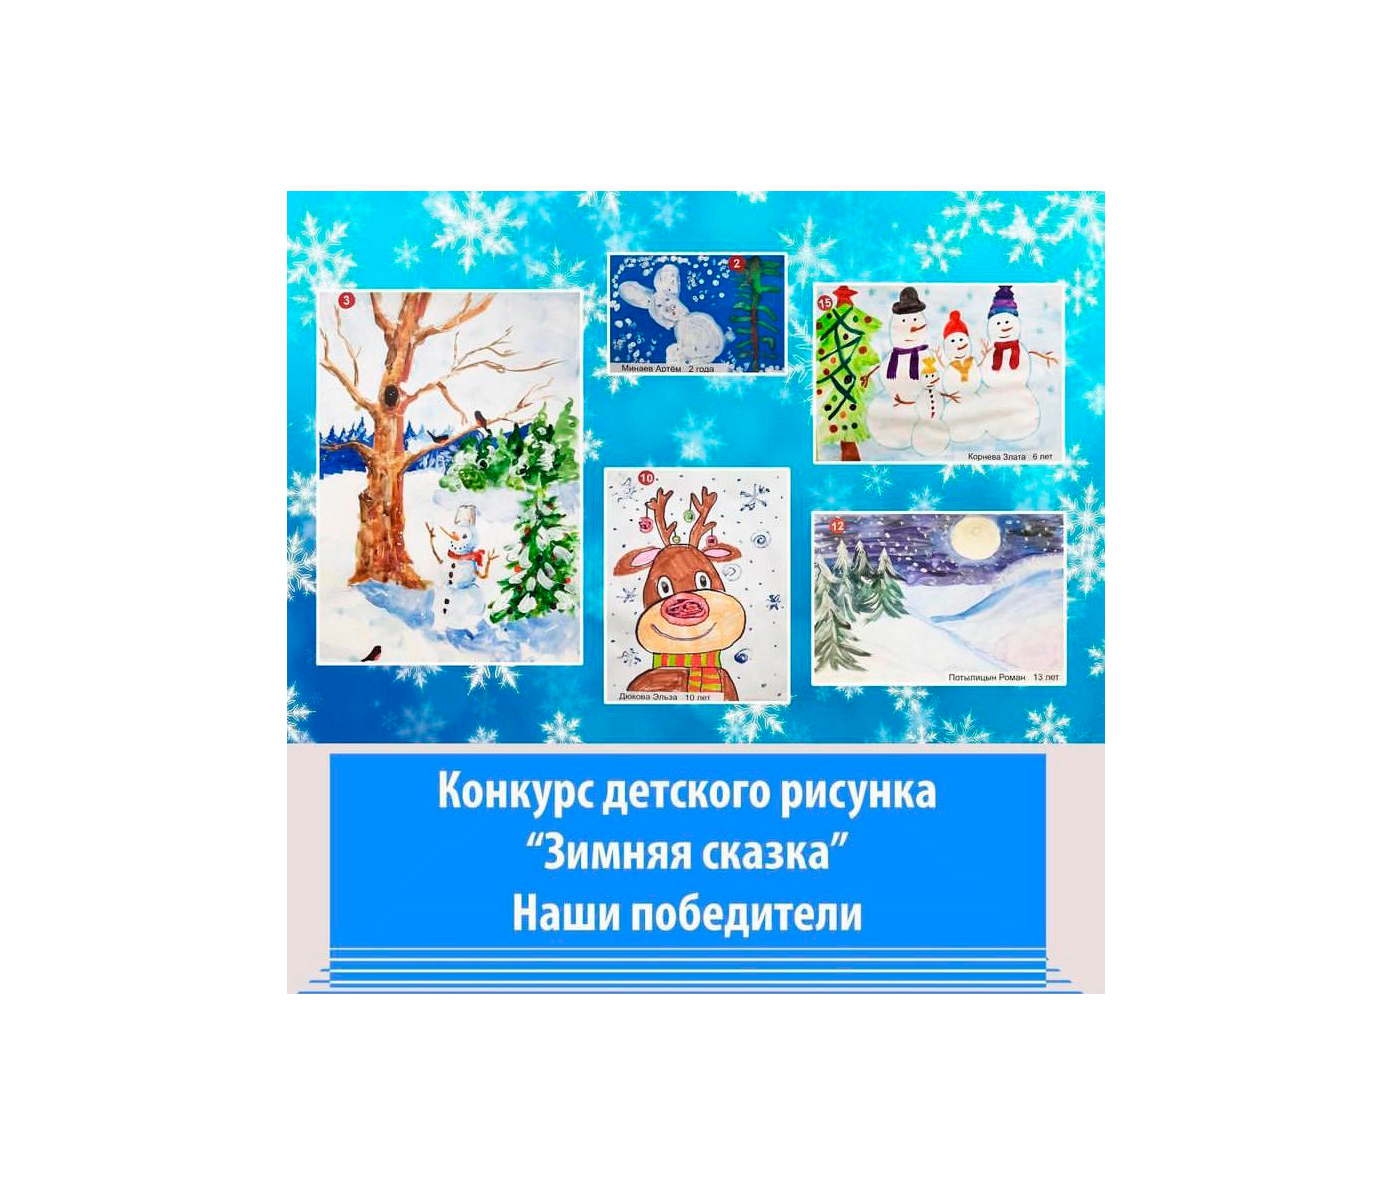 Победители конкурса детского рисунка "Зимняя сказка"